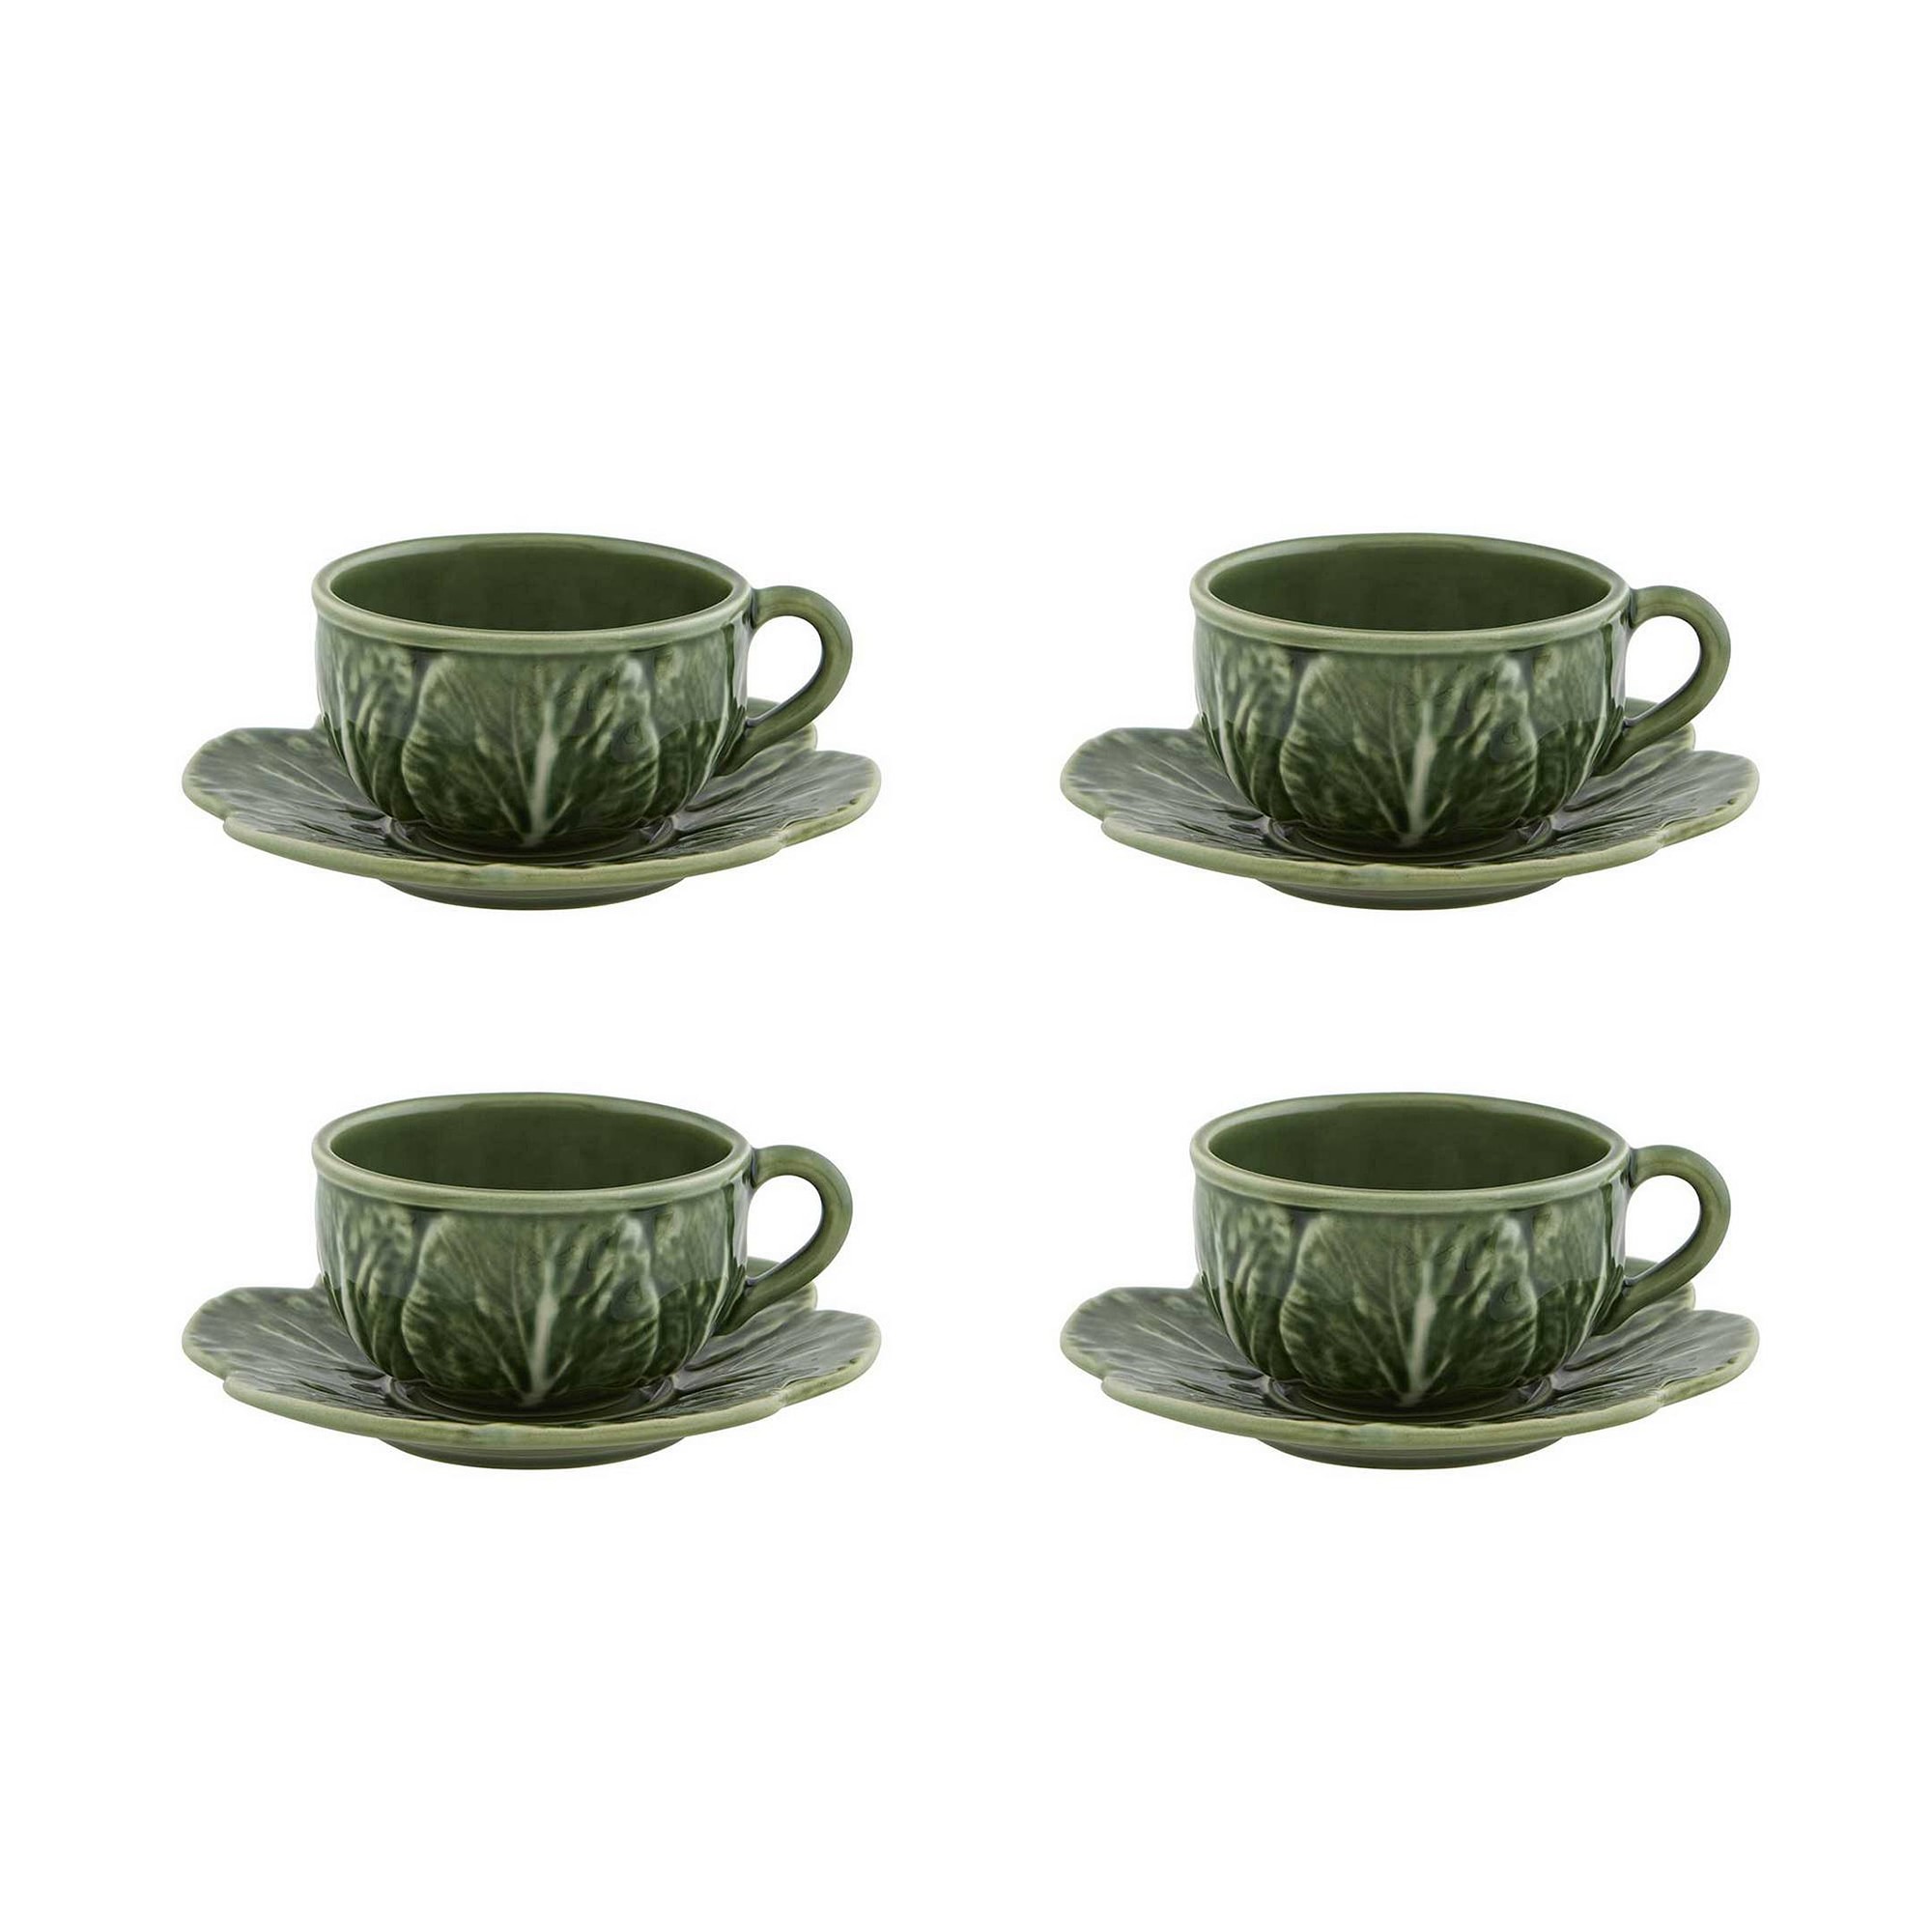 Bordallo Pinheiro Cabbage Tea Cup & Saucer, Set of 4